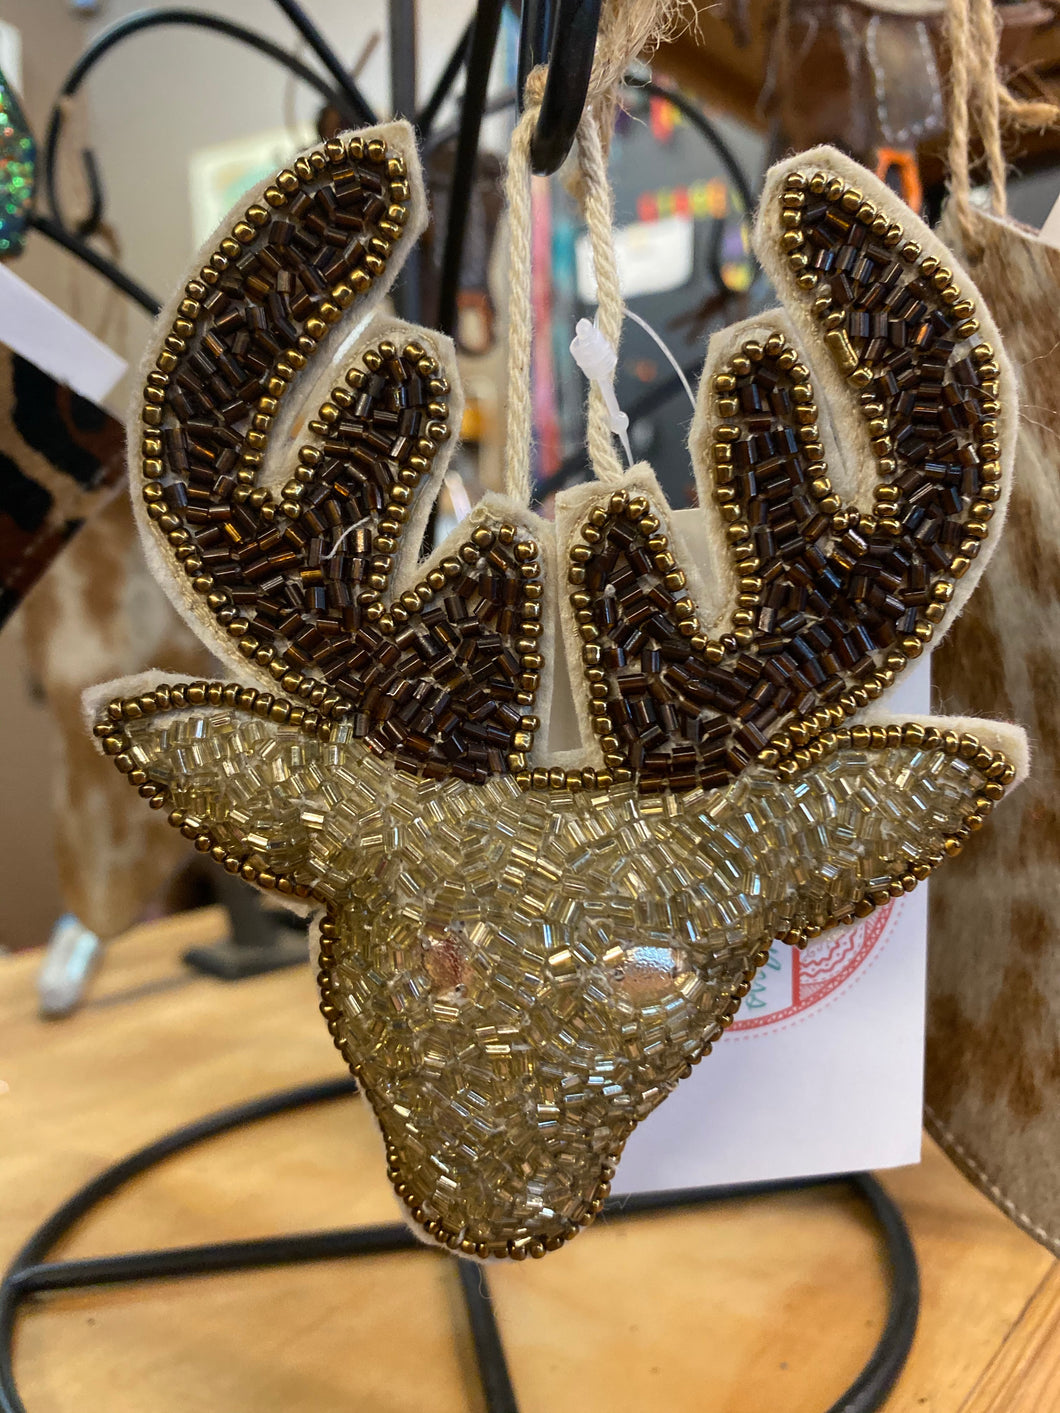 Beaded Reindeer Ornament